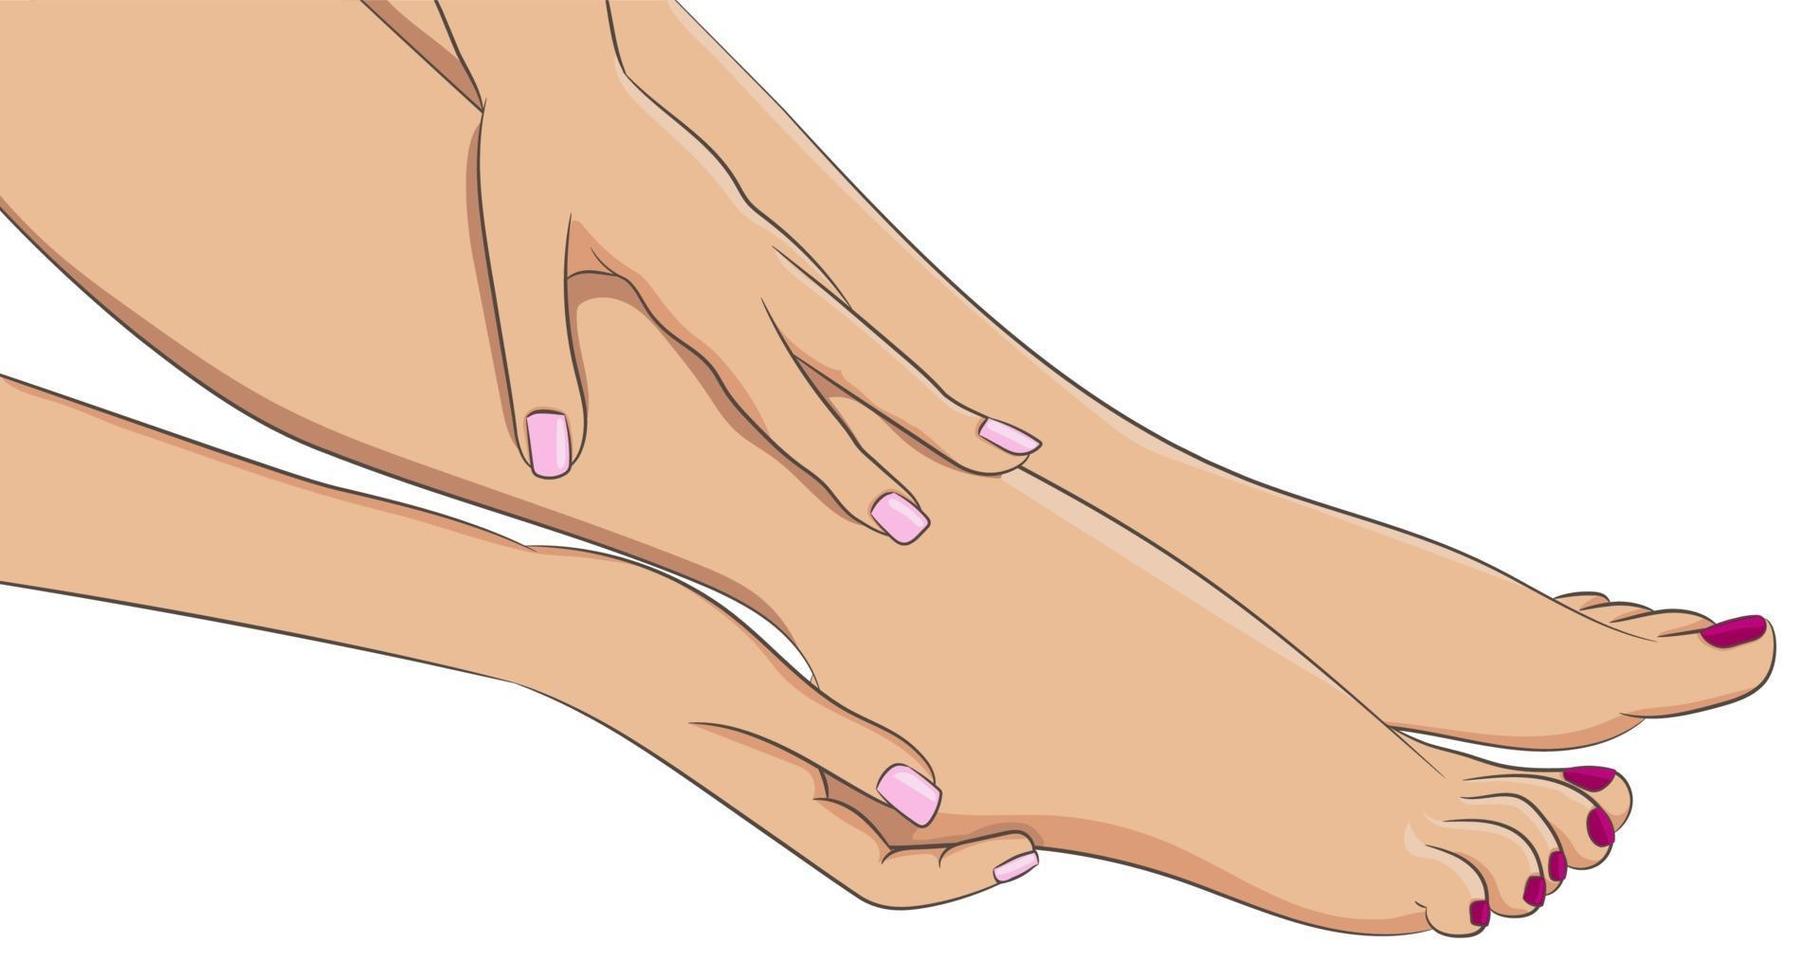 gambe femminili a piedi nudi, vista laterale. mani di donna che fanno massaggio ai piedi vettore